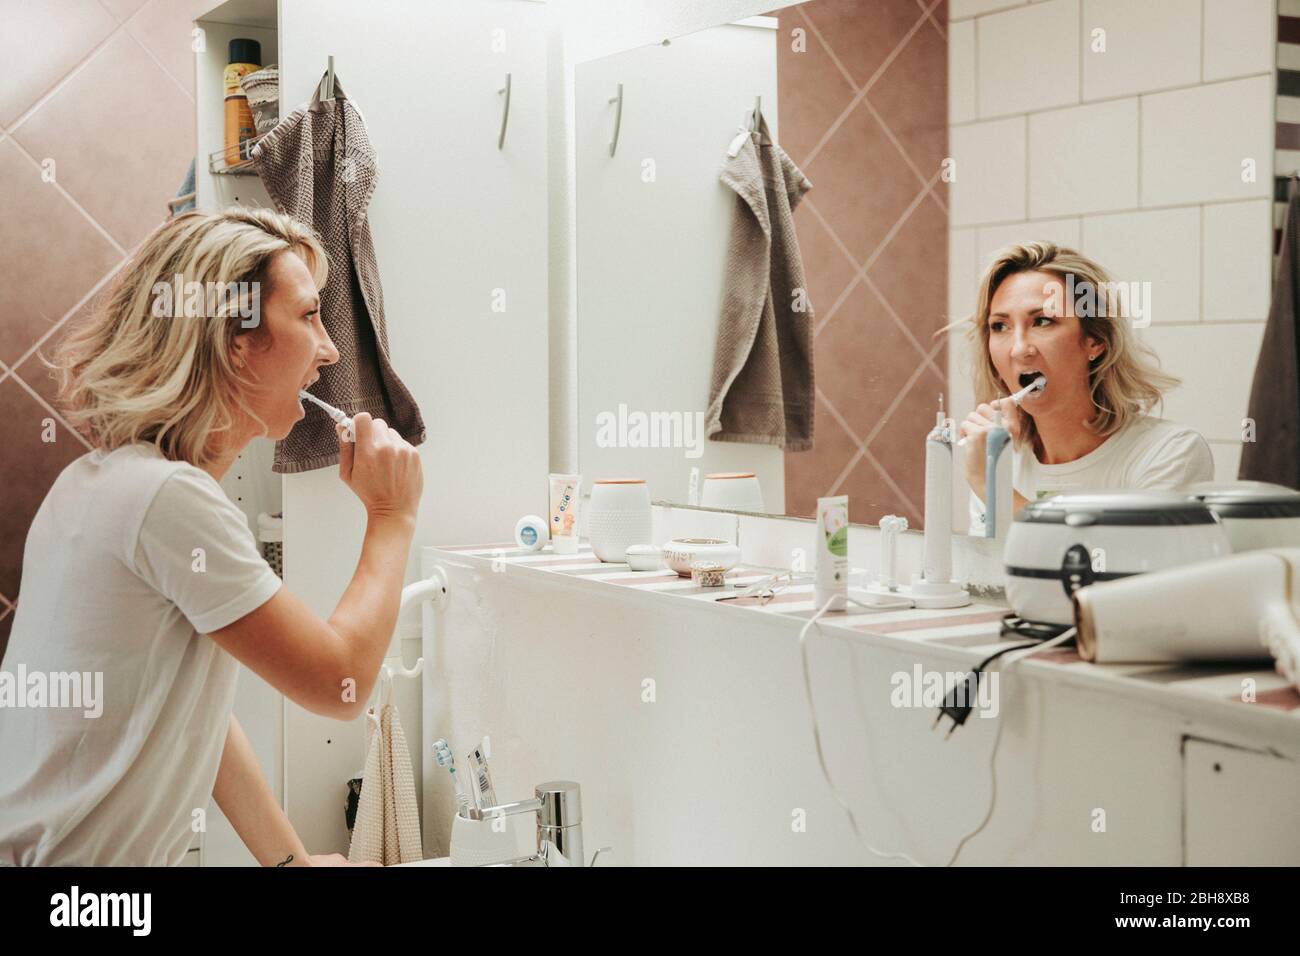 Frau beim Zähne putzen im Bad Stock Photo